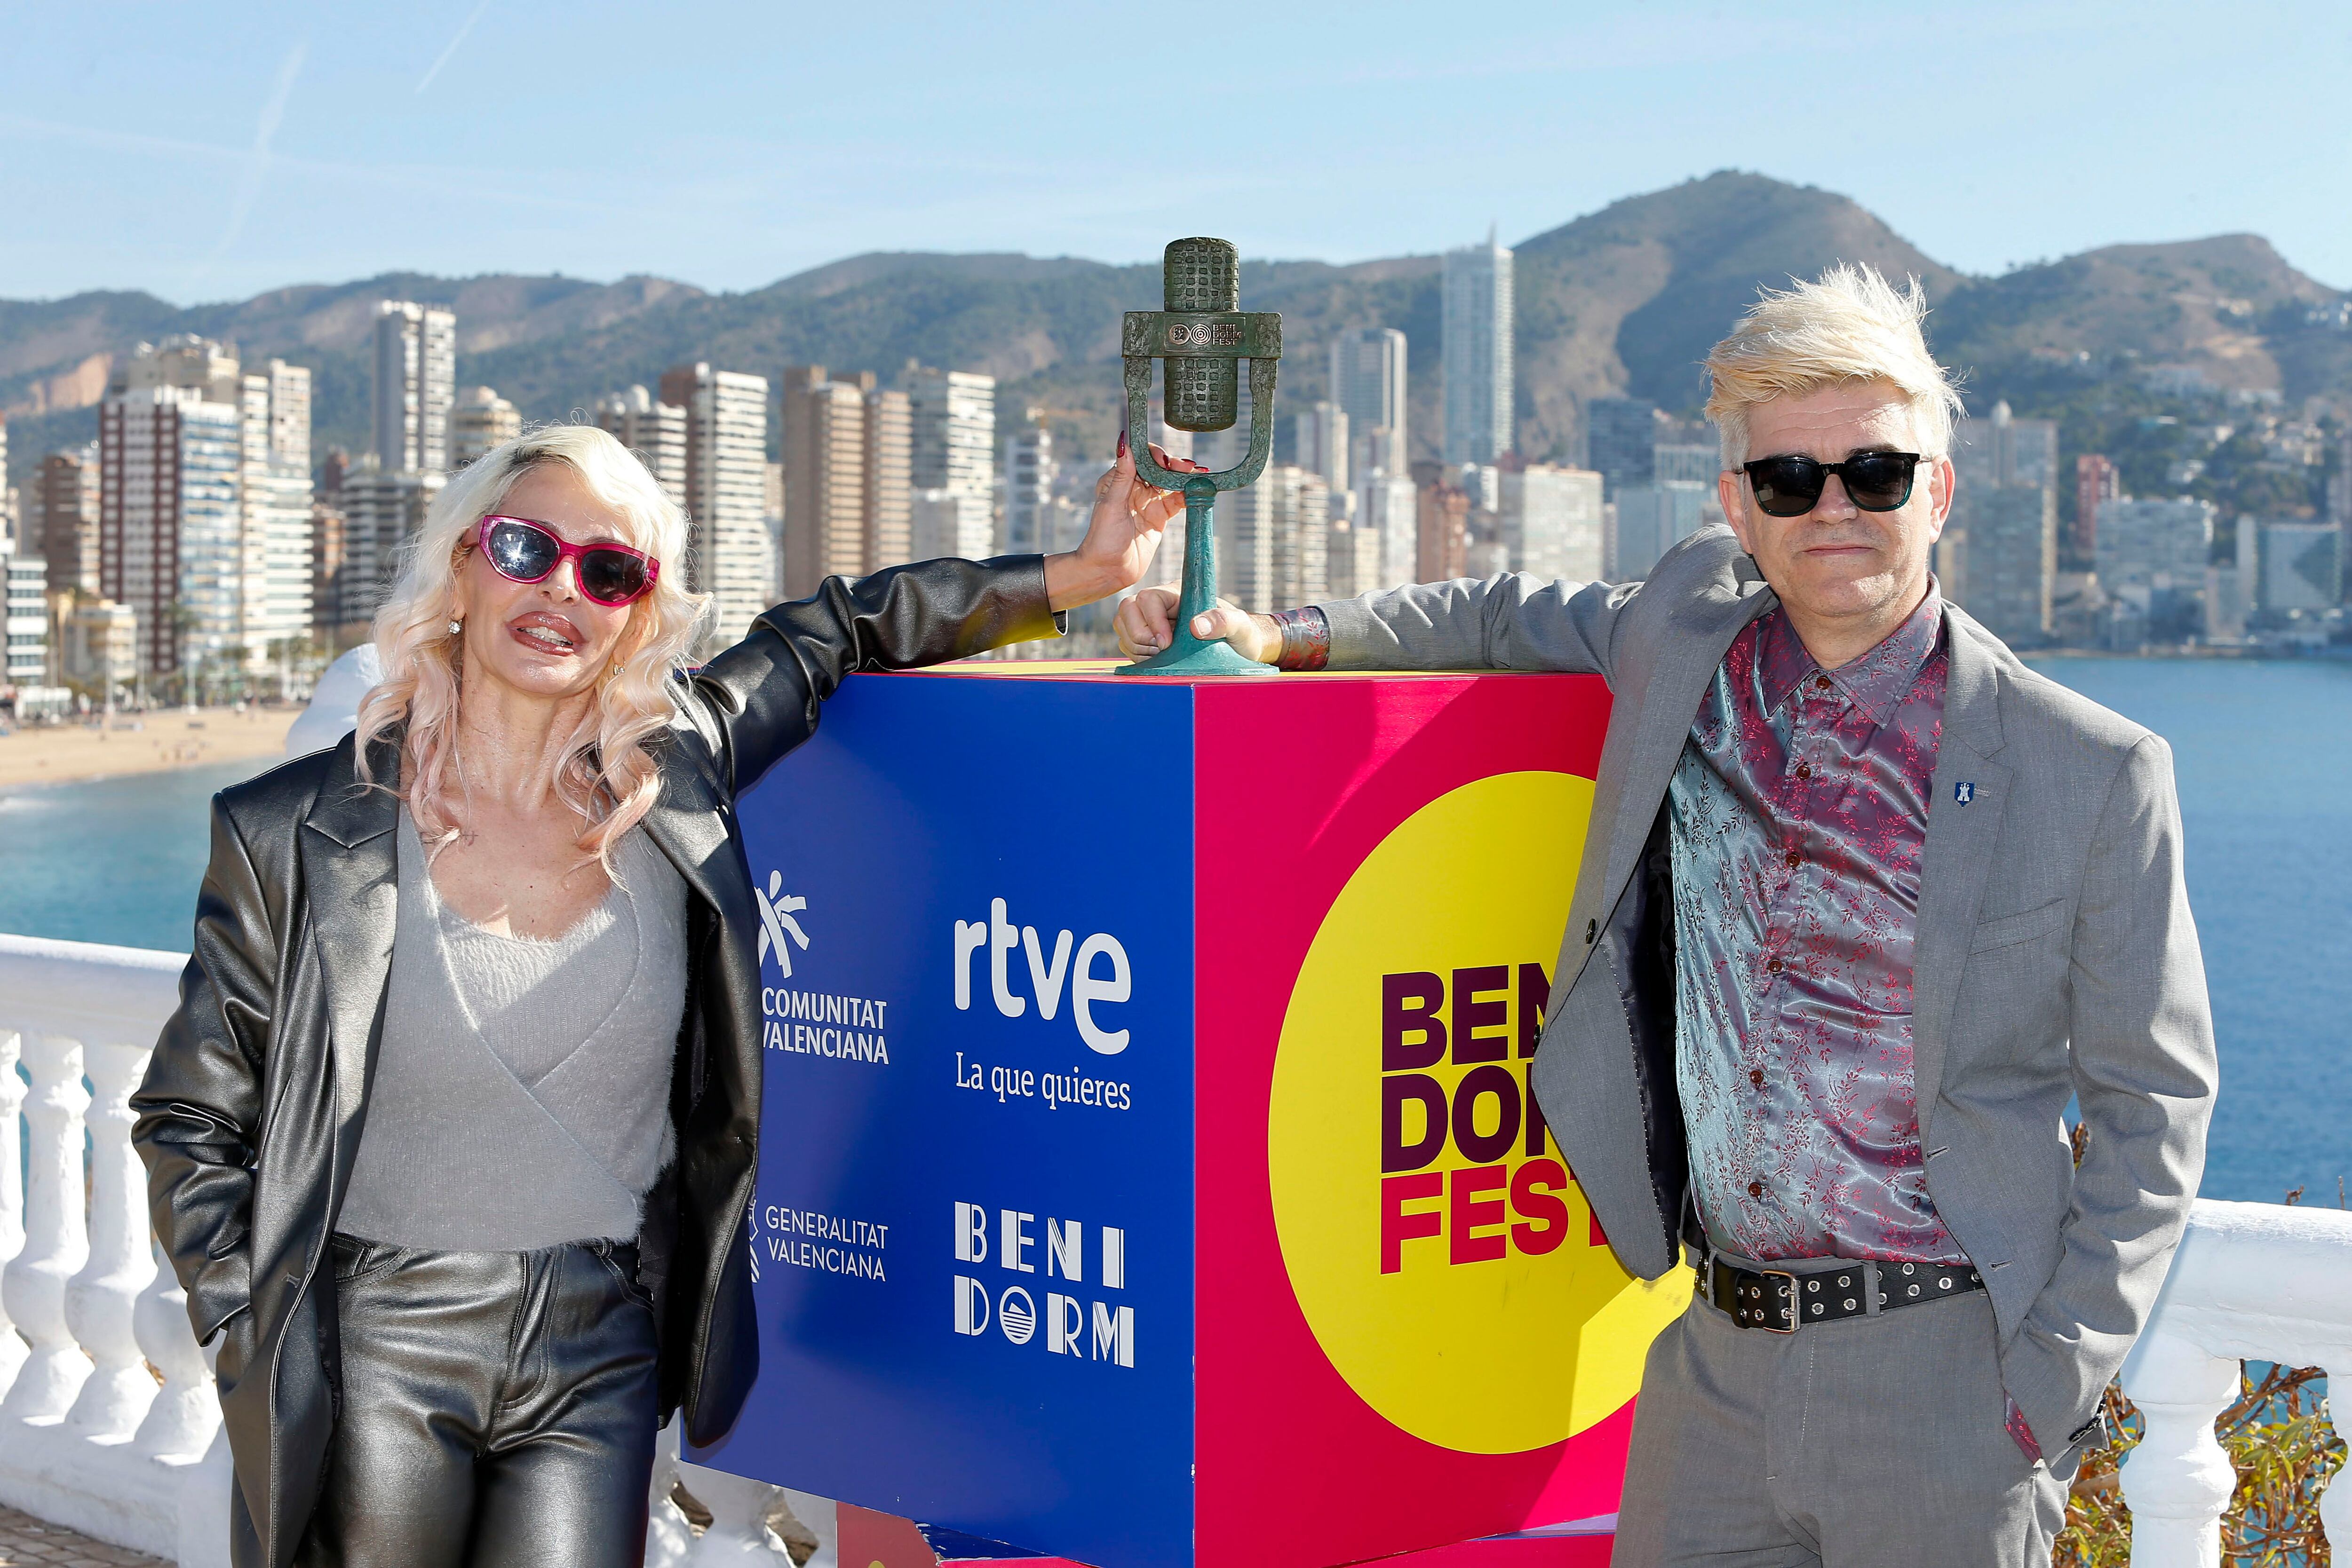 El dúo Nebulossa posaba el domingo en el Balcón del Mediterráneo de Benidorm, tras proclamarse ganadores del Benidorm Fest.